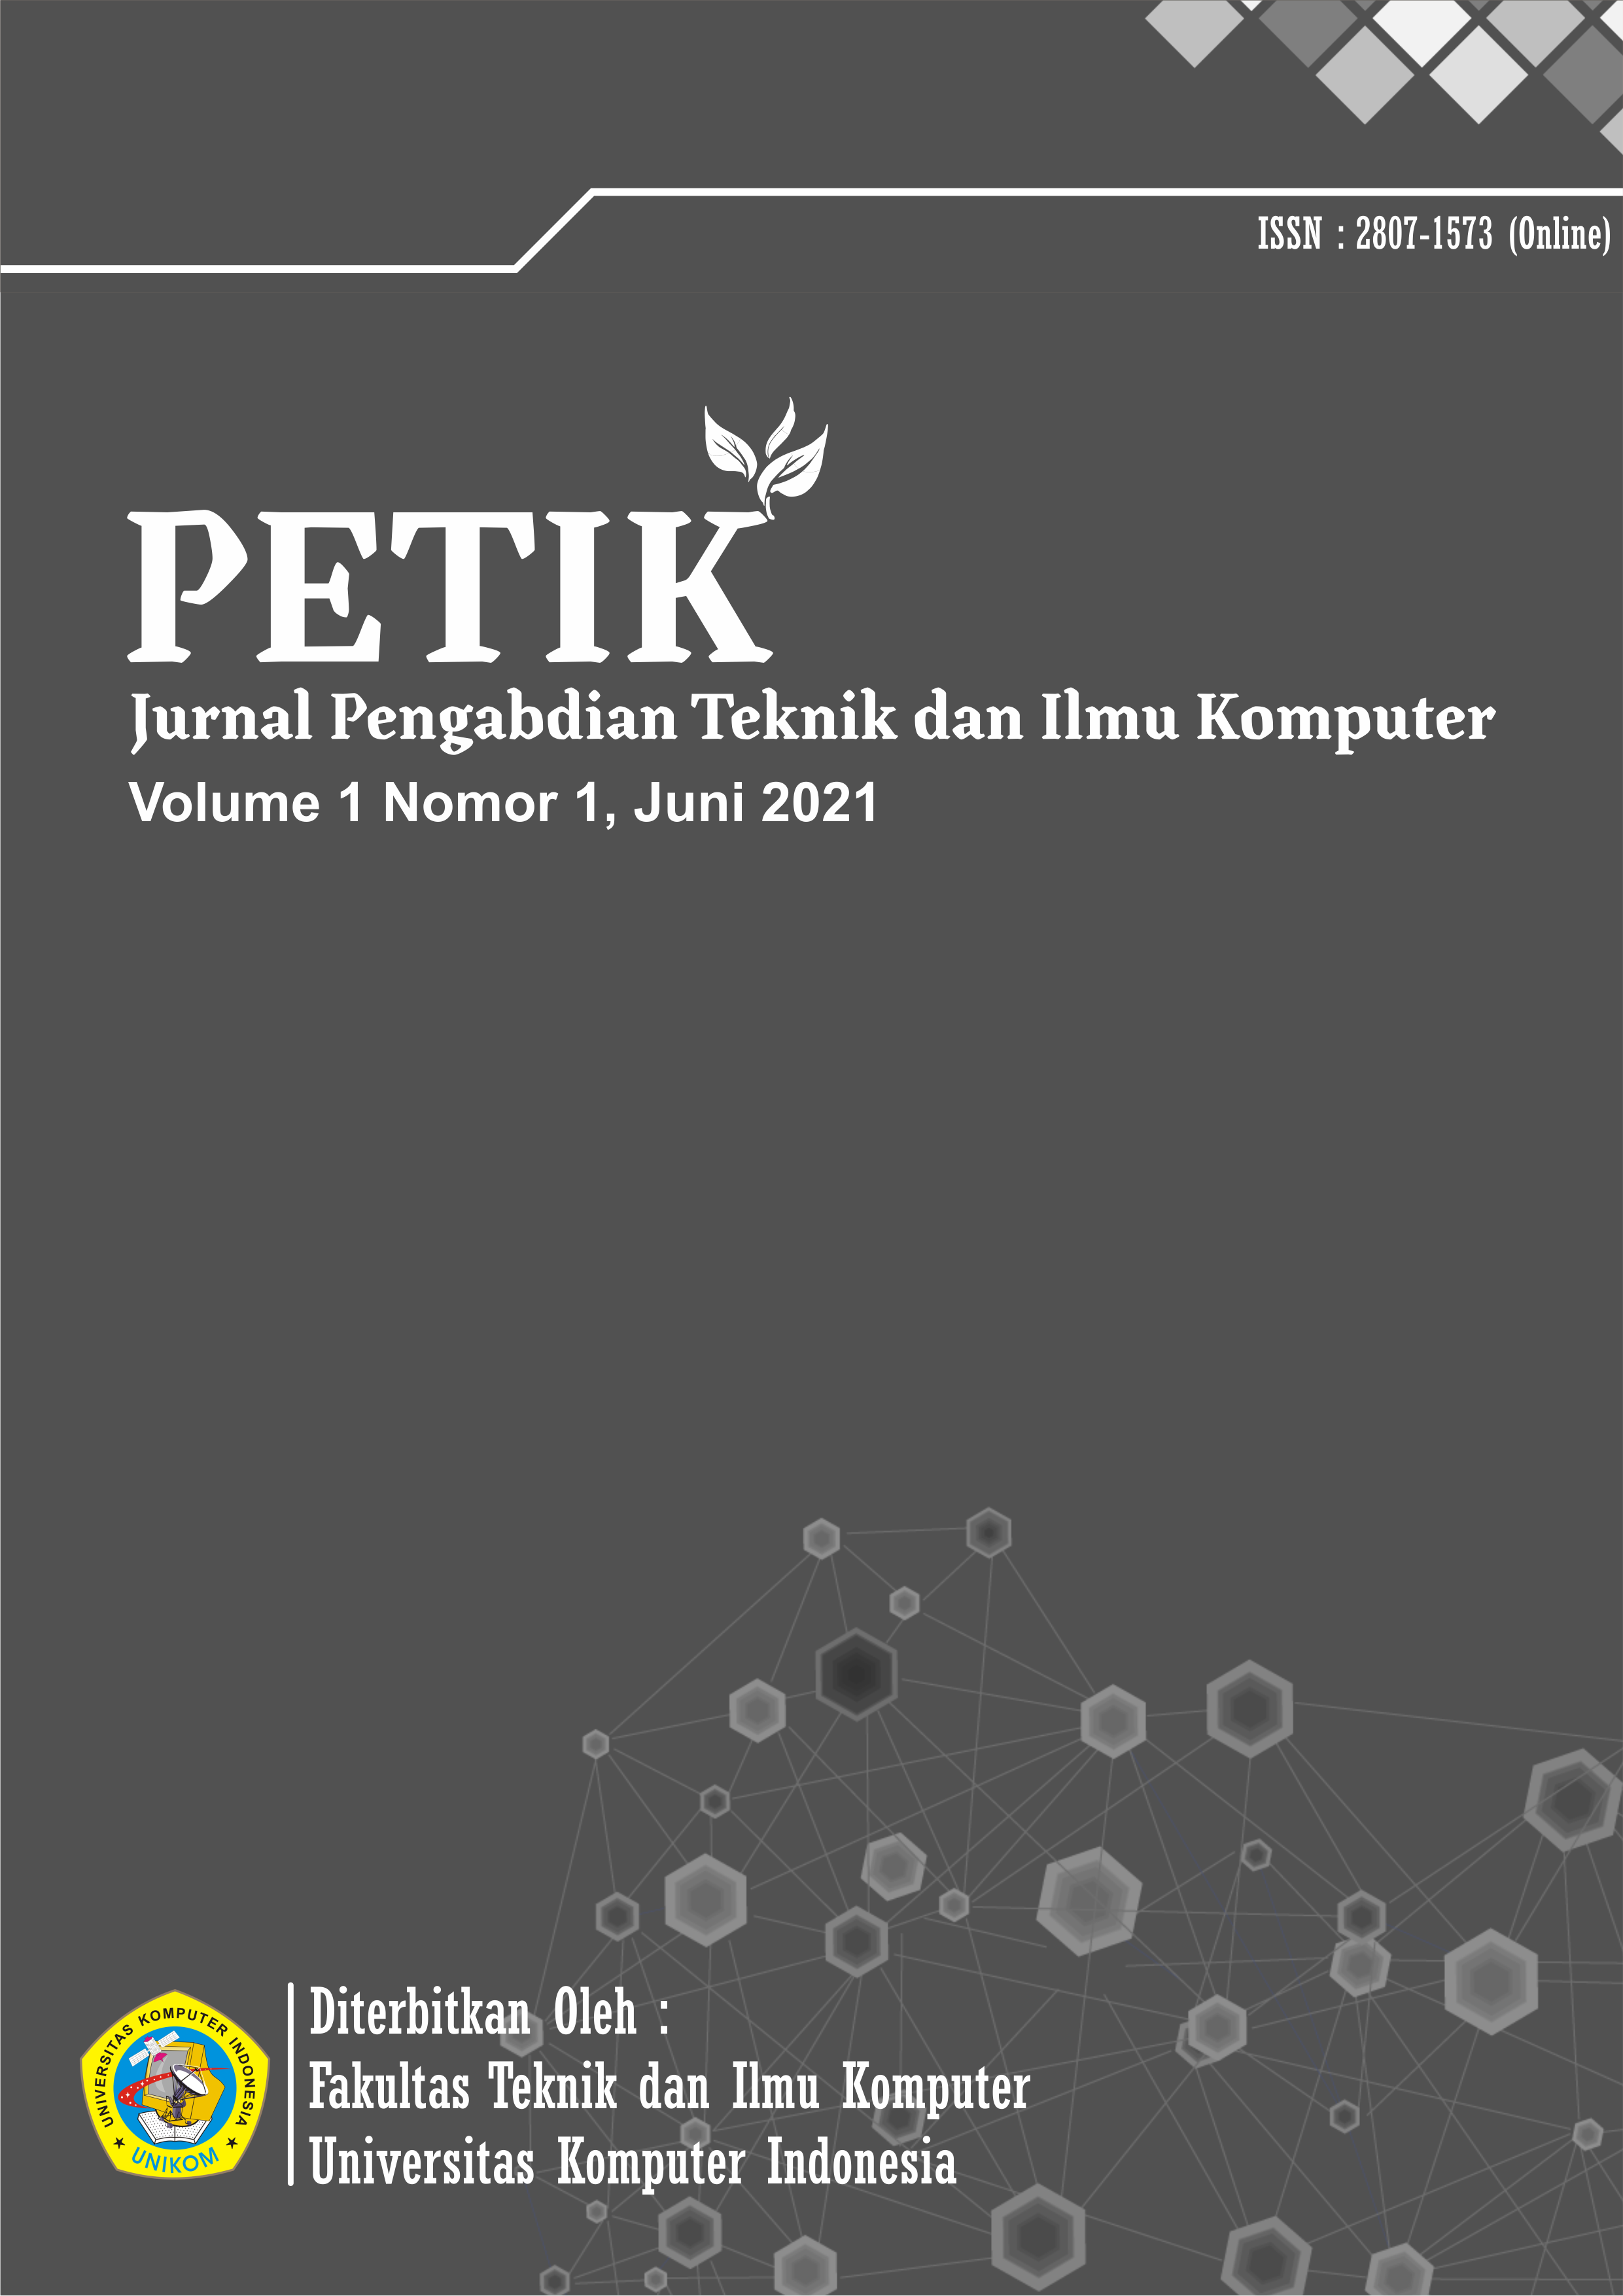 PETIK Vol 1 No 1 Juni 2021